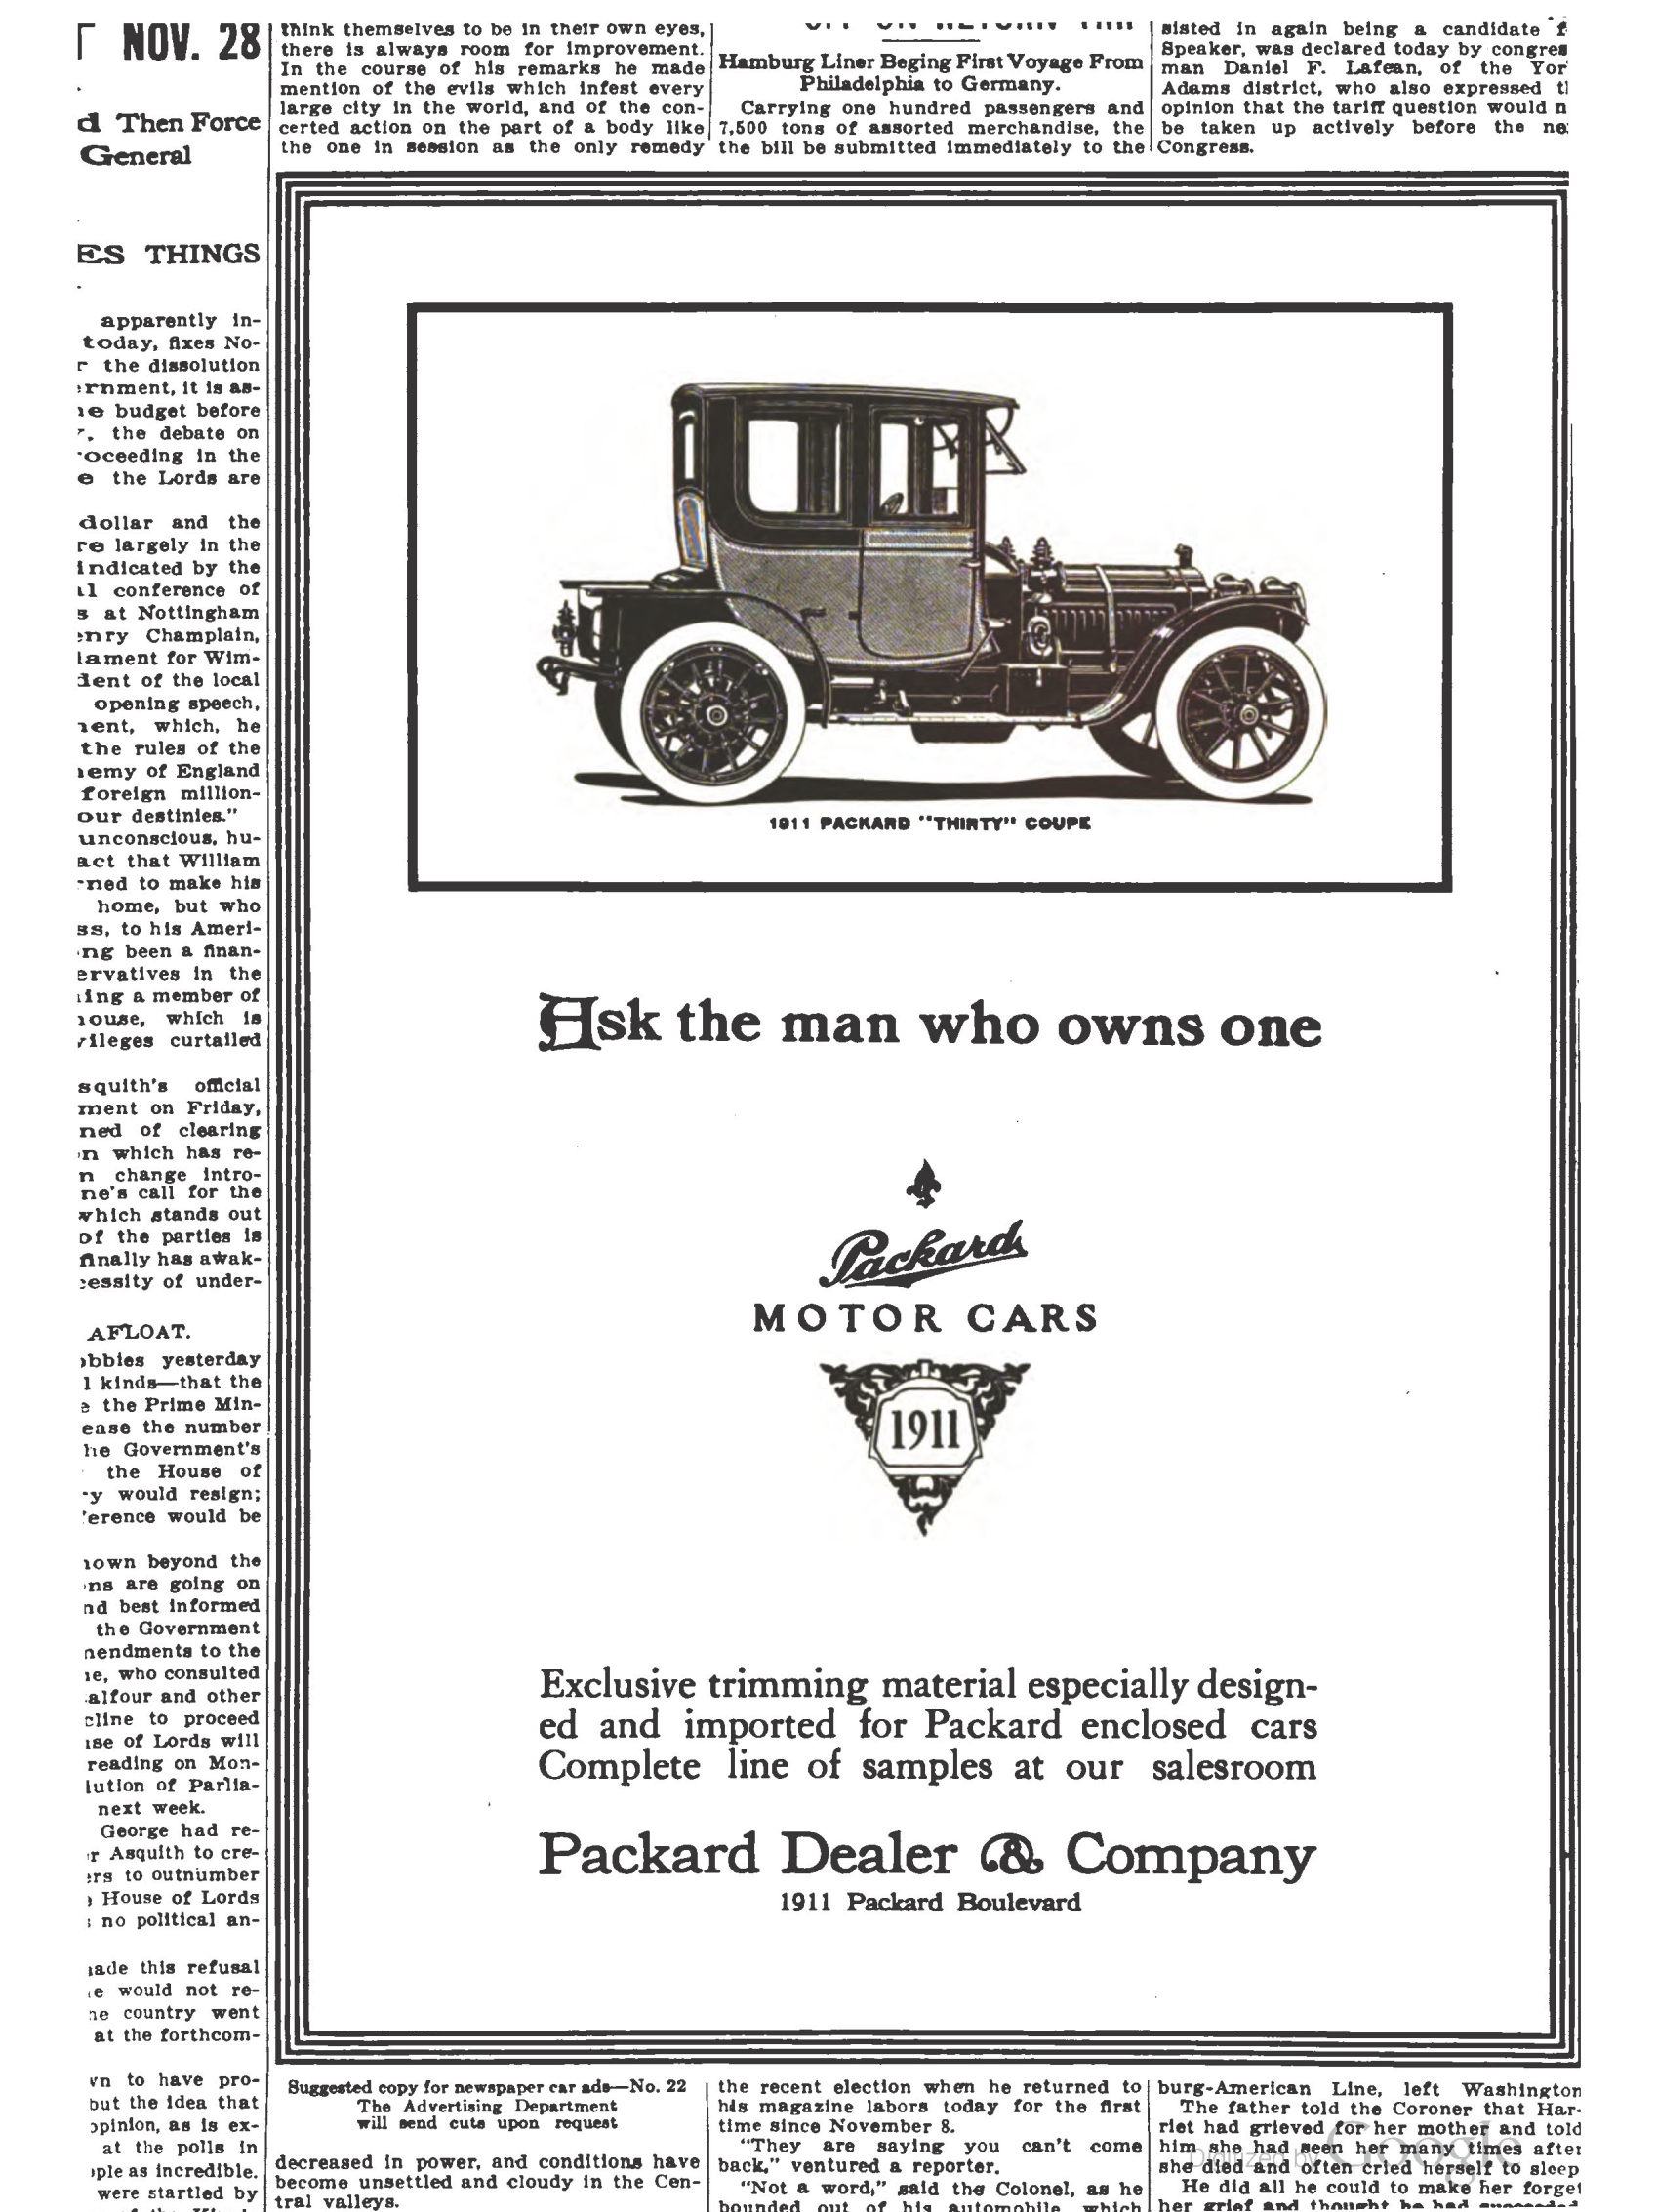 1910_The_Packard_Newsletter-247